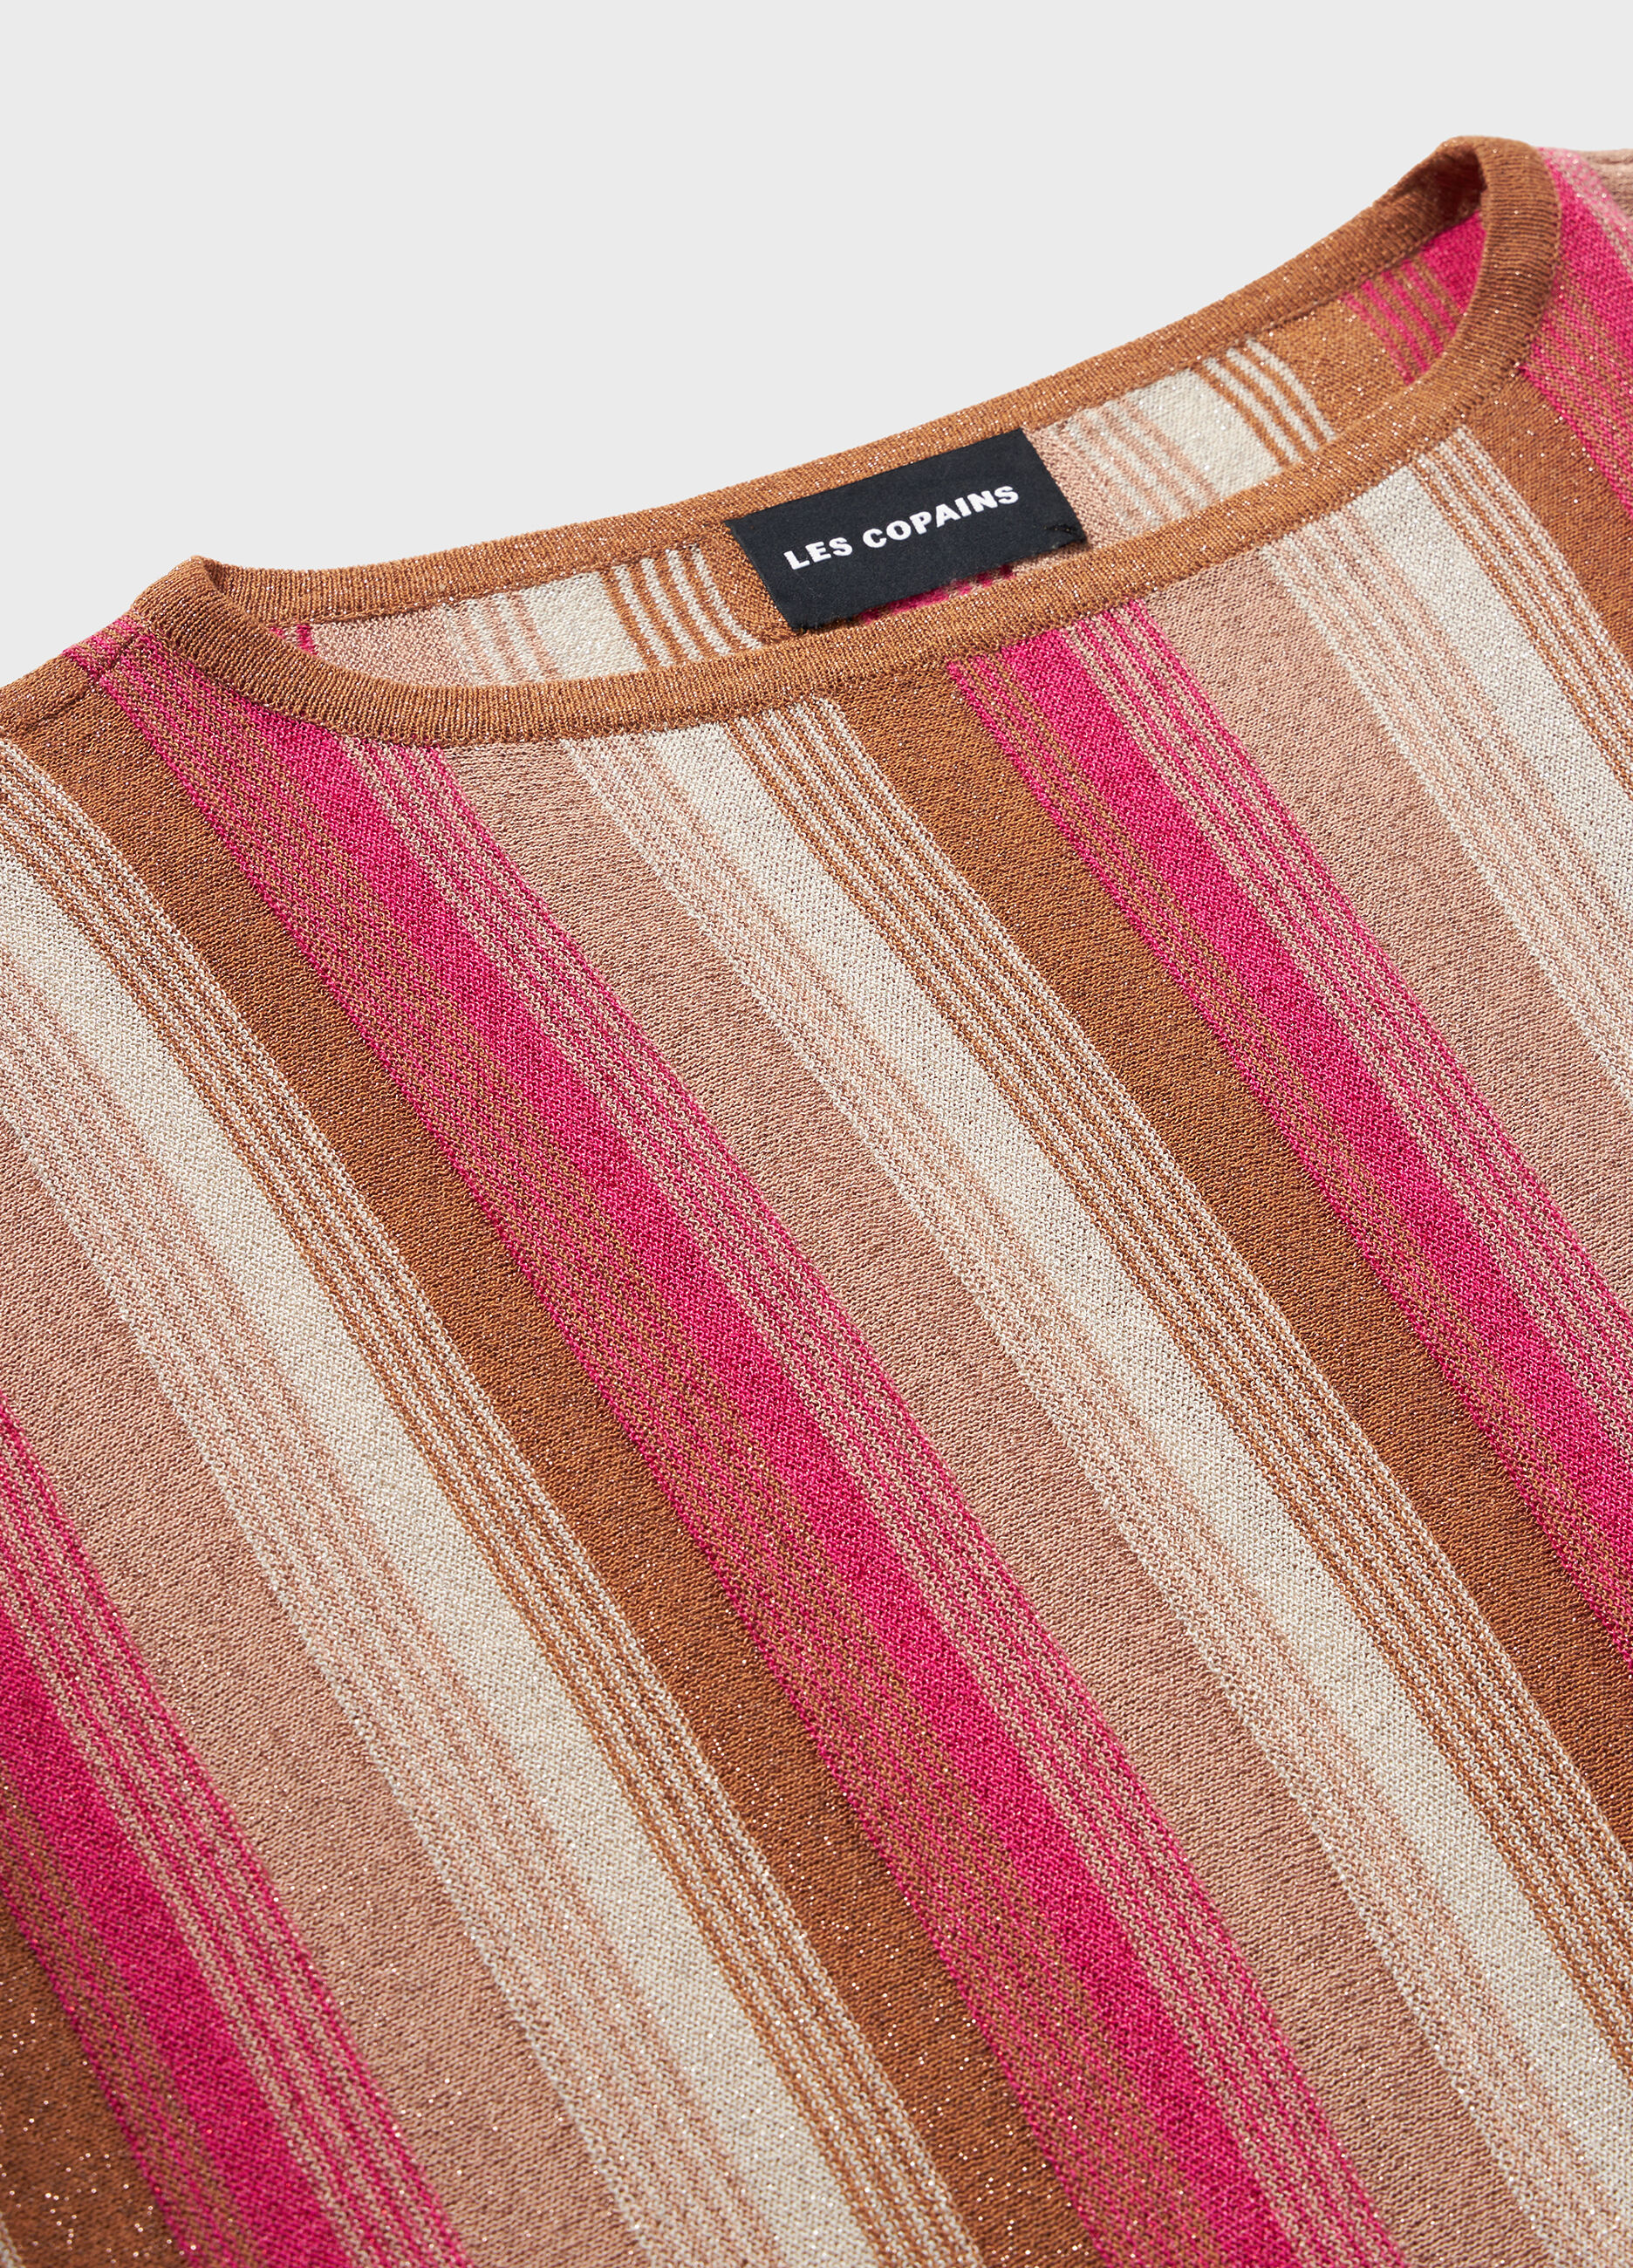 Maglione tricot a righe